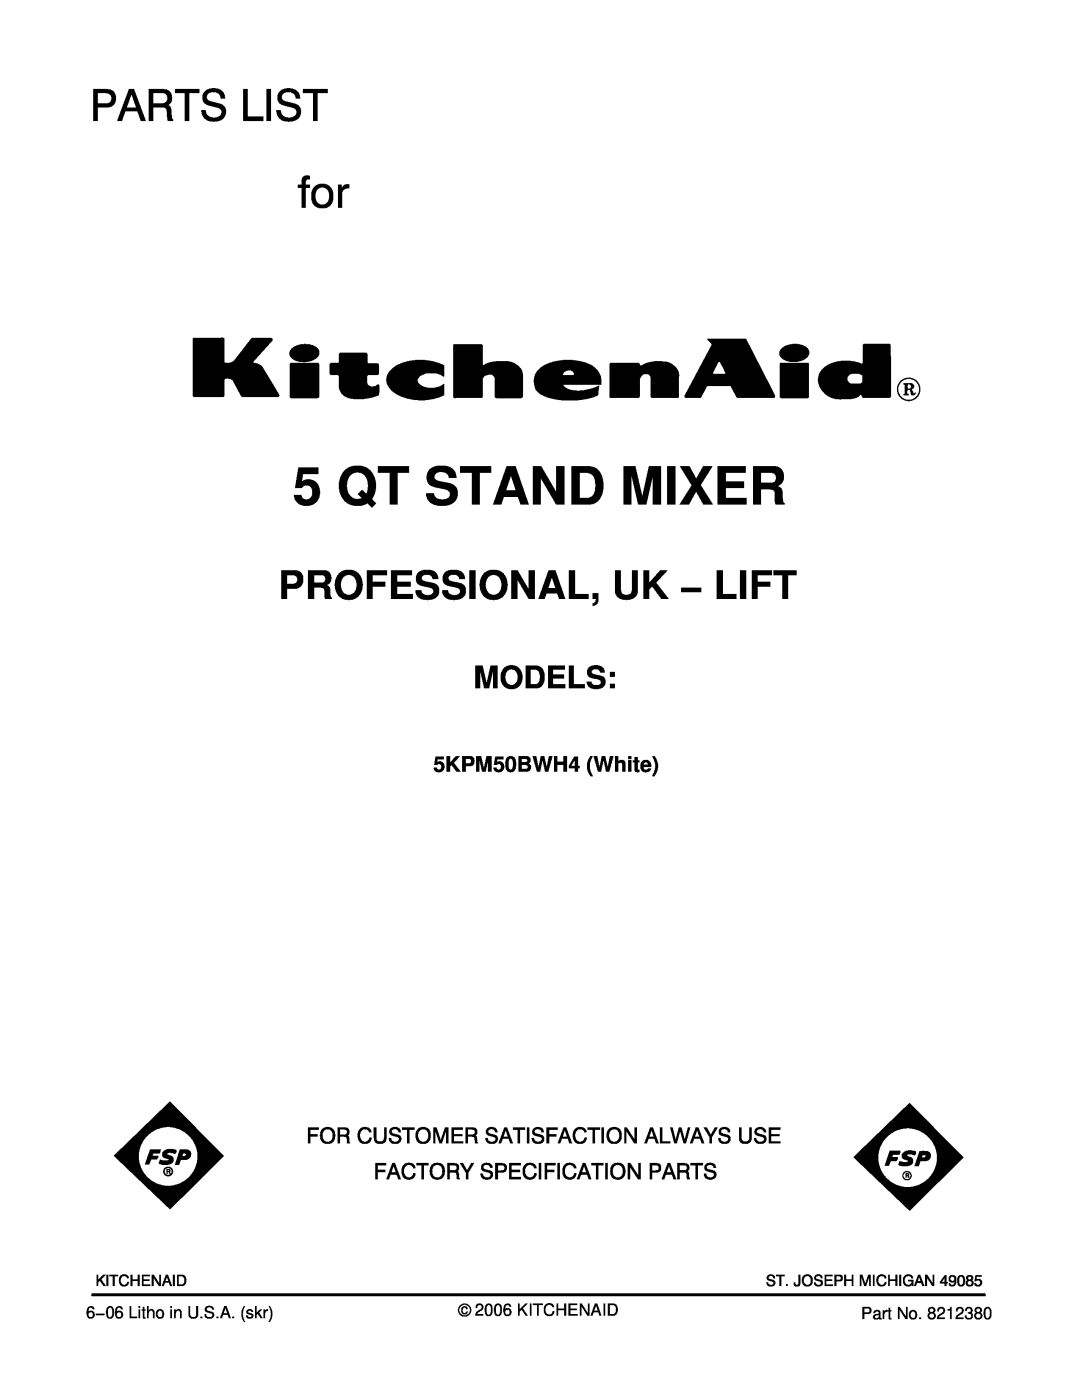 KitchenAid manual Models, 5KPM50BWH4 White, Qt Stand Mixer, Professional, Uk − Lift 